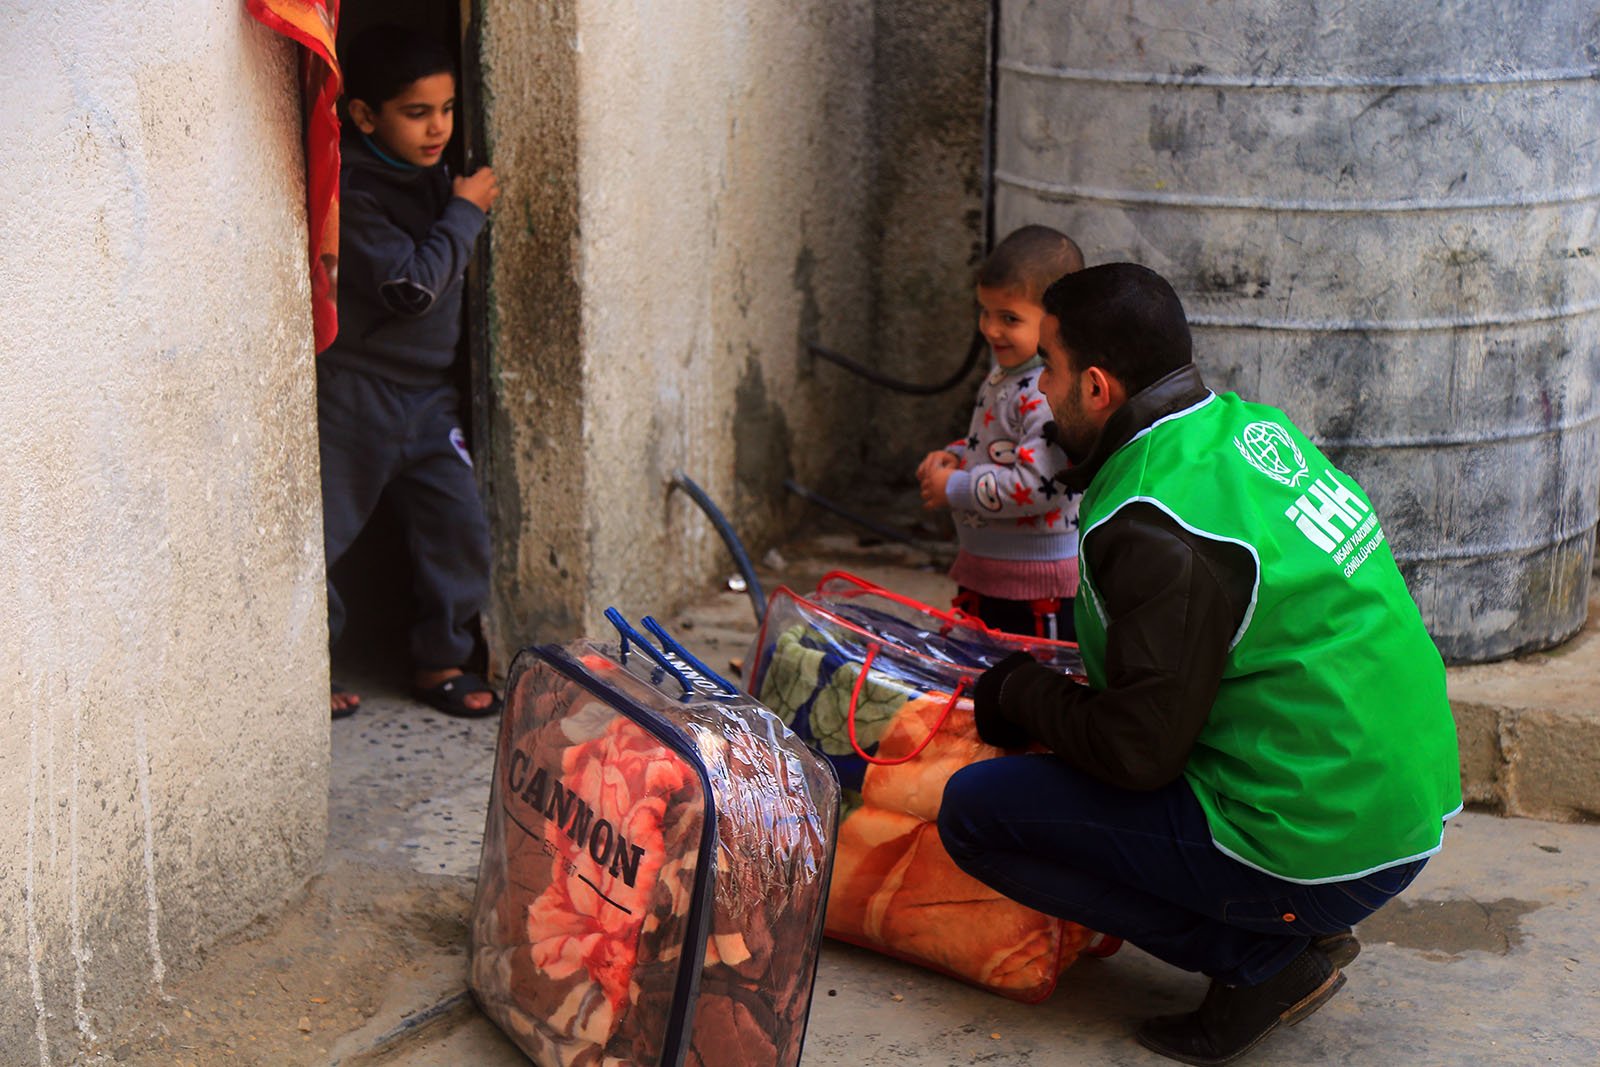 Gazze’ye Yardım Girişimi ve İsrail Saldırısının Soğukkanlı Analizi